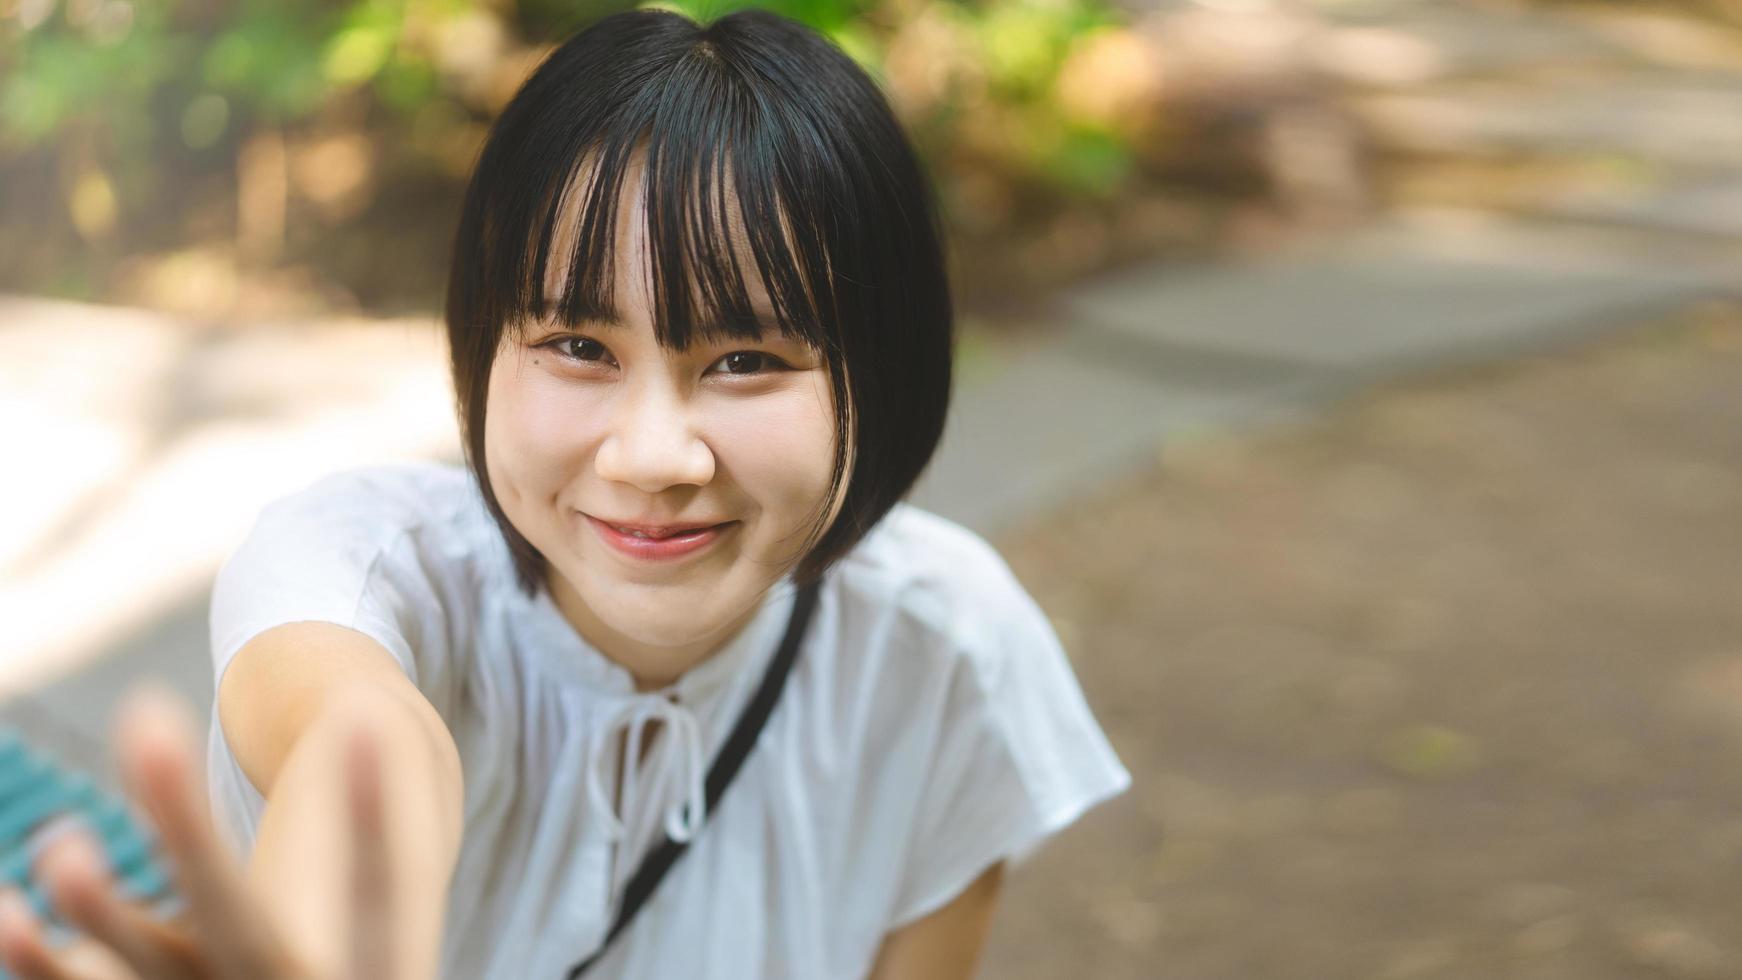 retrato de mulher asiática de sorriso feliz com cabelo curto e olhando a câmera. foto